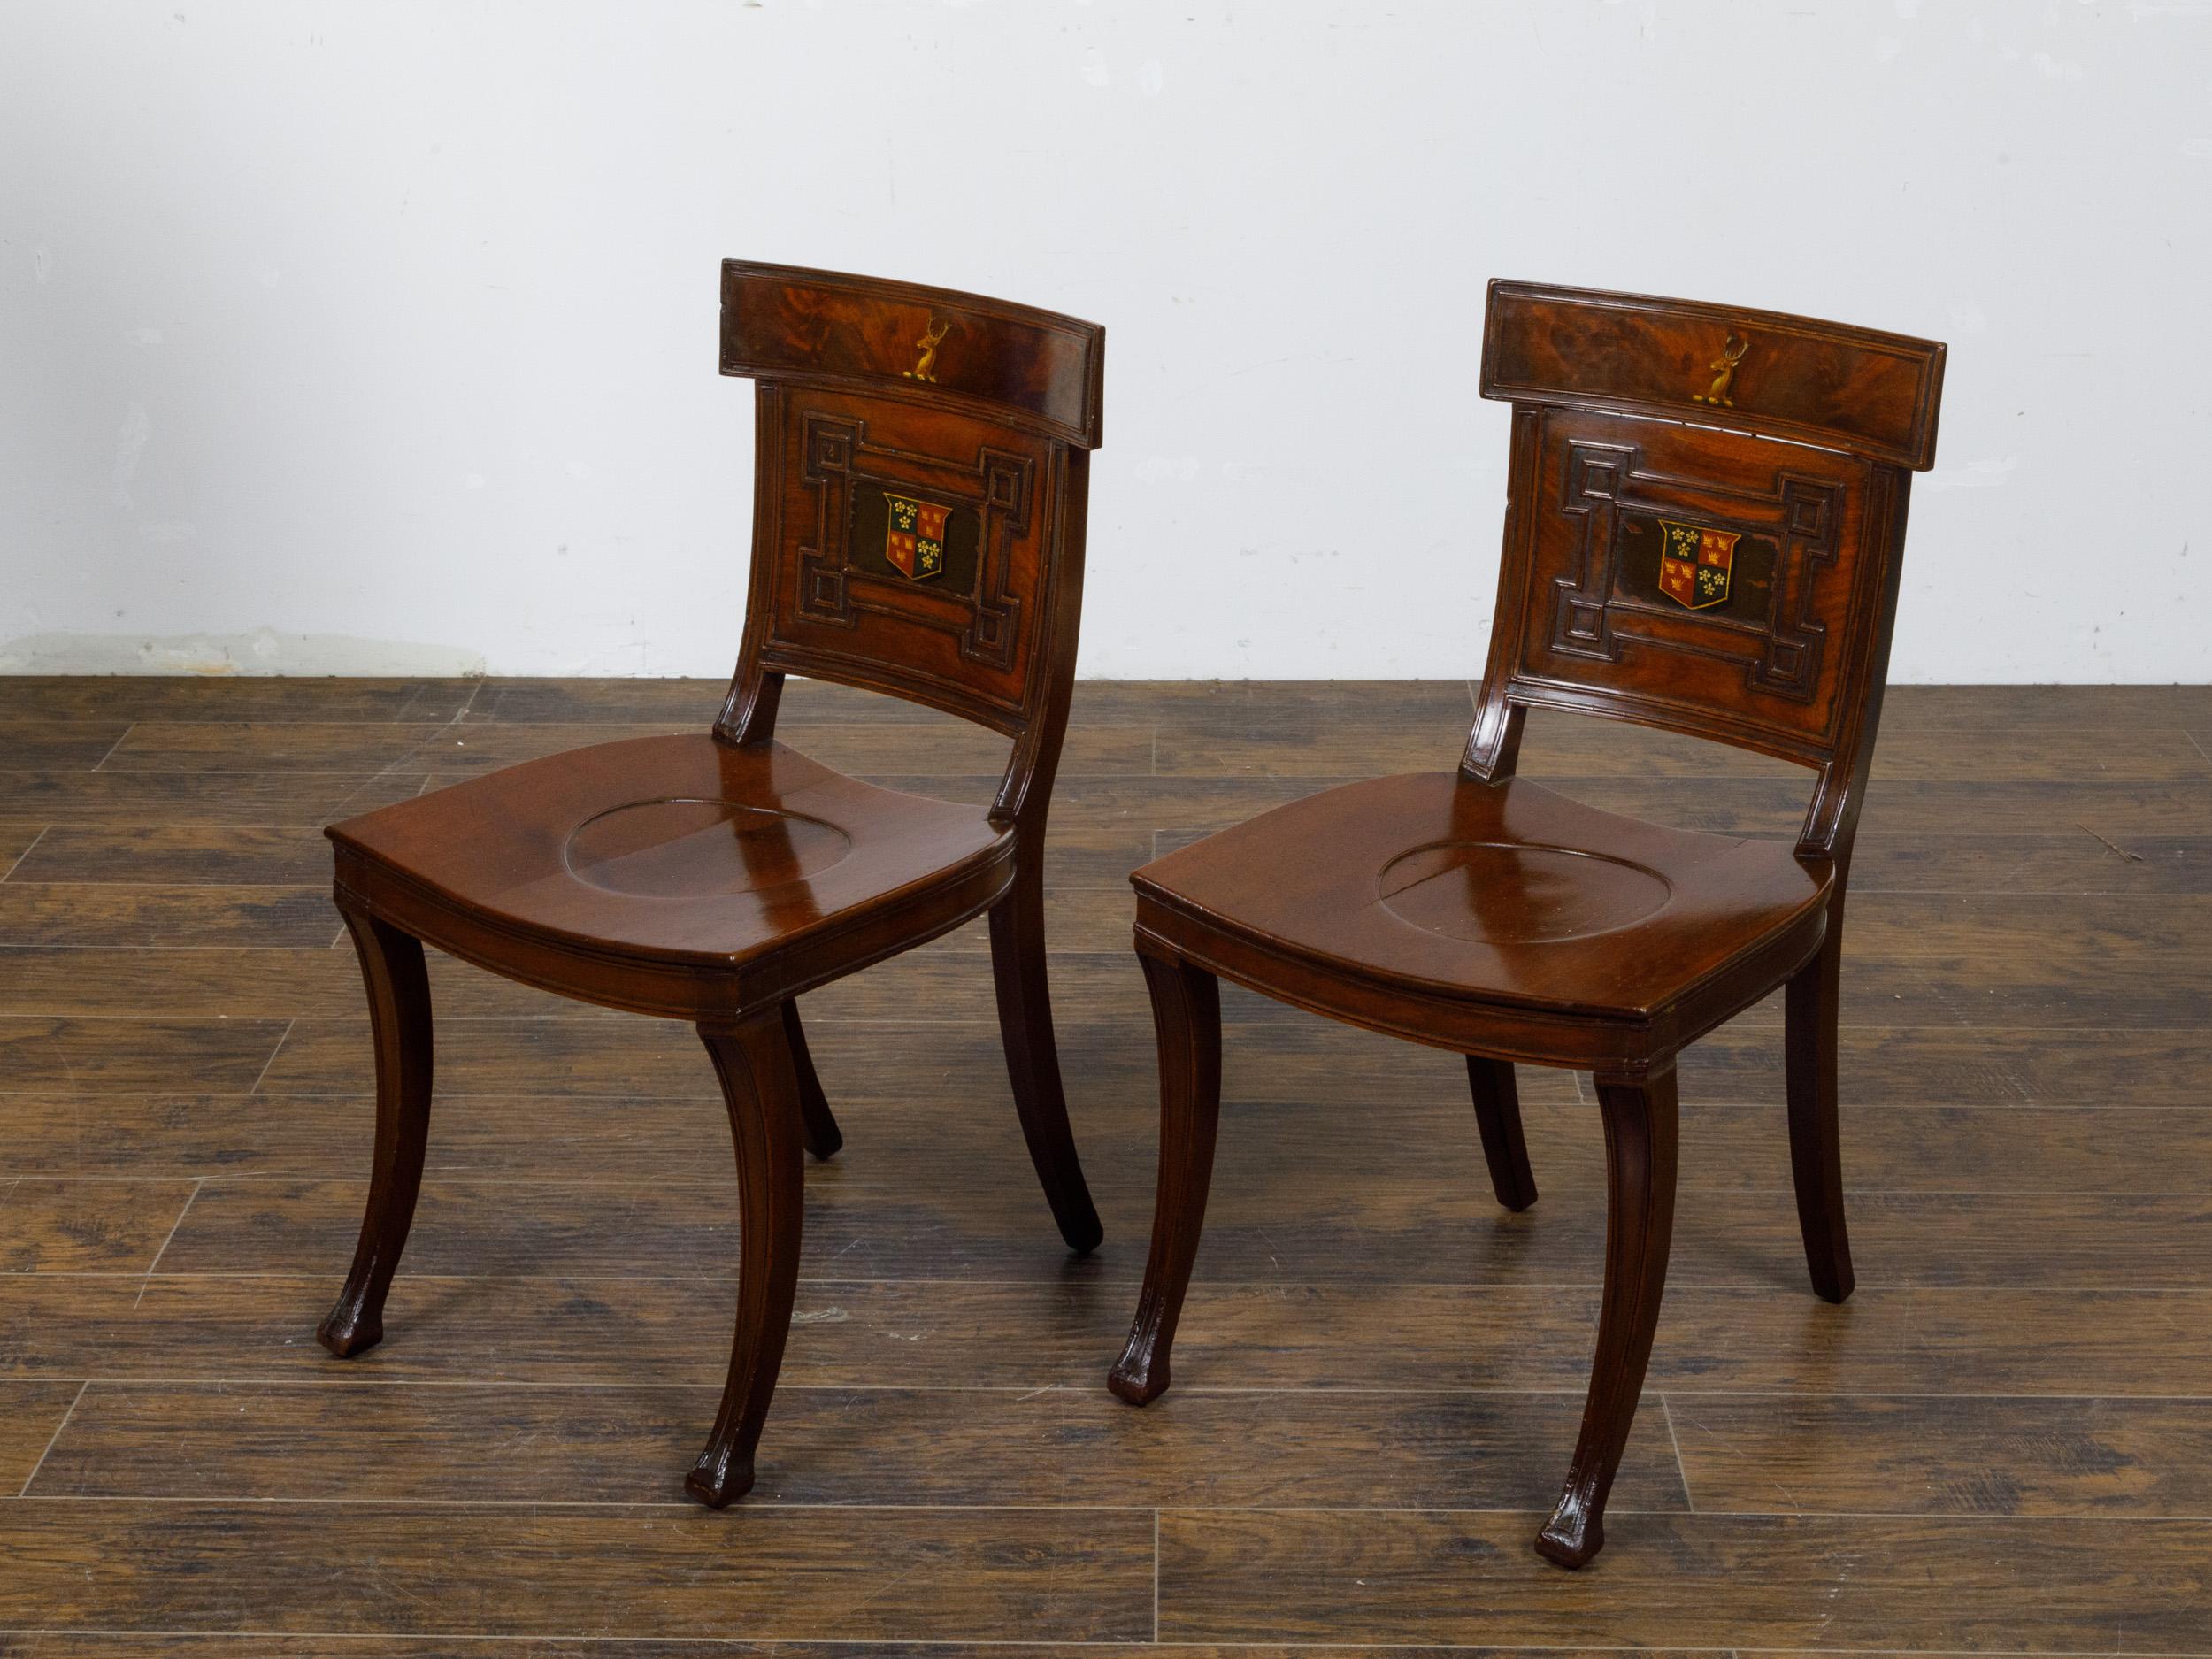 Paire de fauteuils de salle en acajou de style Régence anglaise du XIXe siècle, avec armoiries, assises bombées et pieds sabres. Ces chaises de salle en acajou de style Régence anglaise du XIXe siècle témoignent de l'élégance et du raffinement de